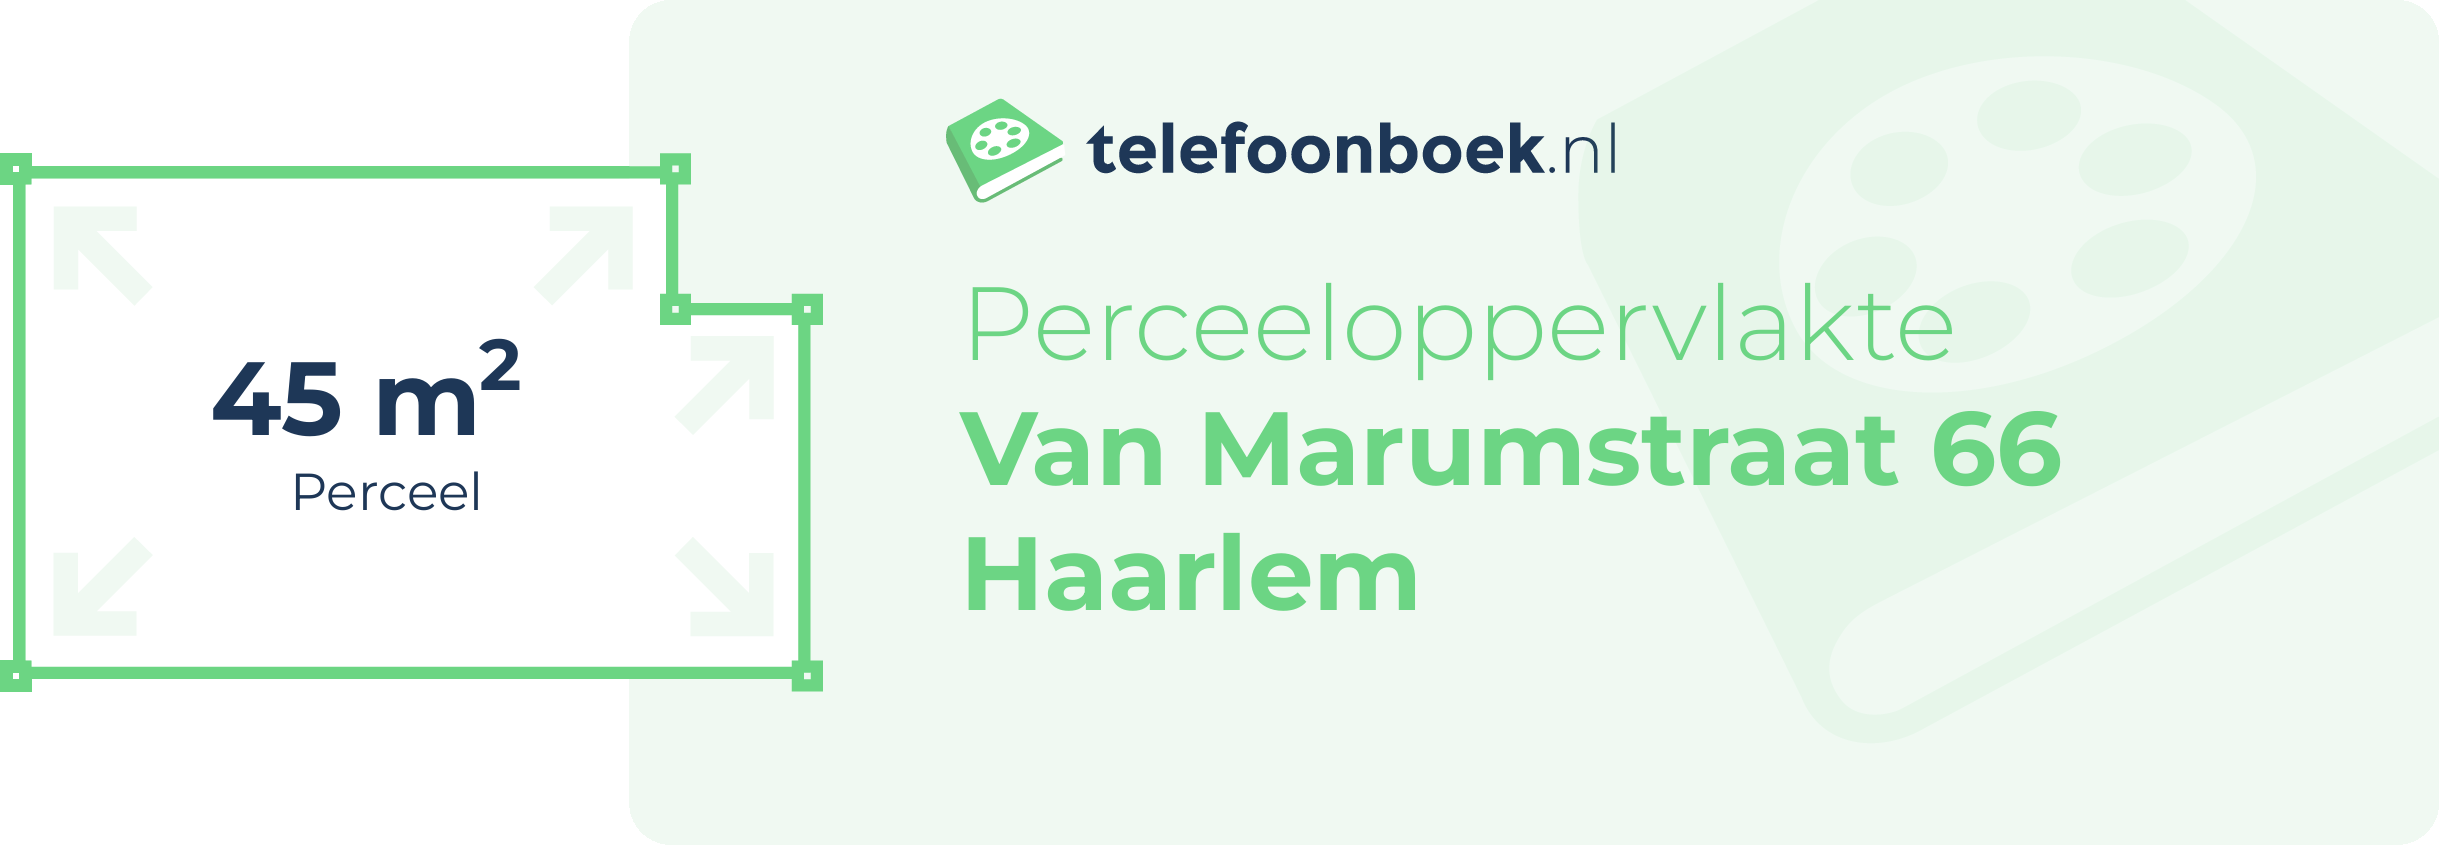 Perceeloppervlakte Van Marumstraat 66 Haarlem